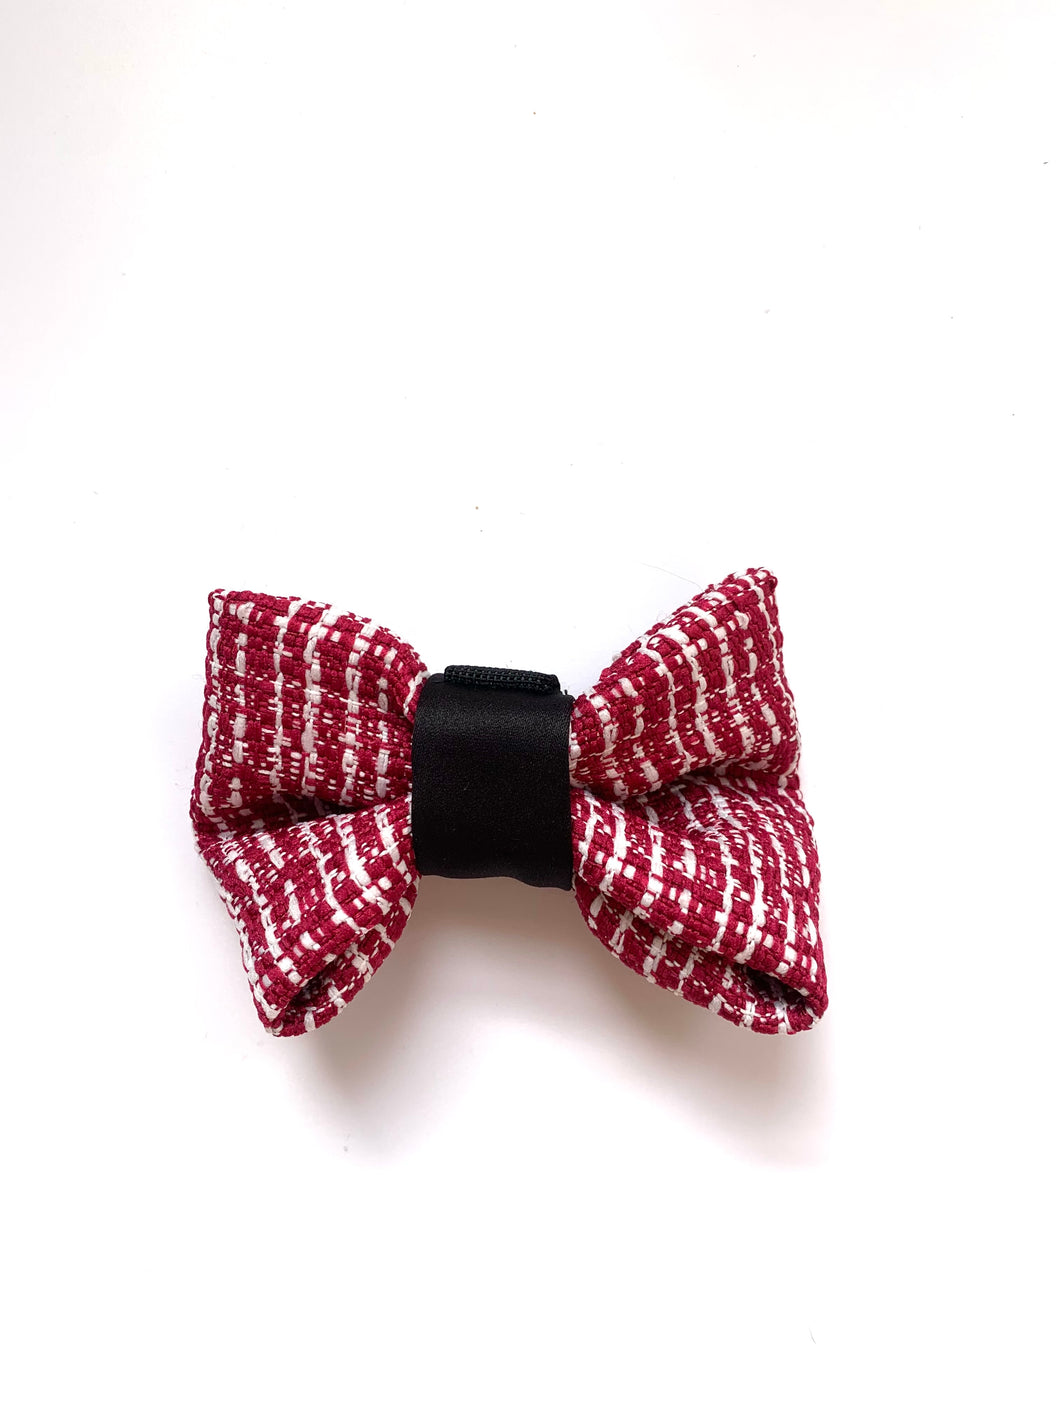 Velvet Red bow tie.